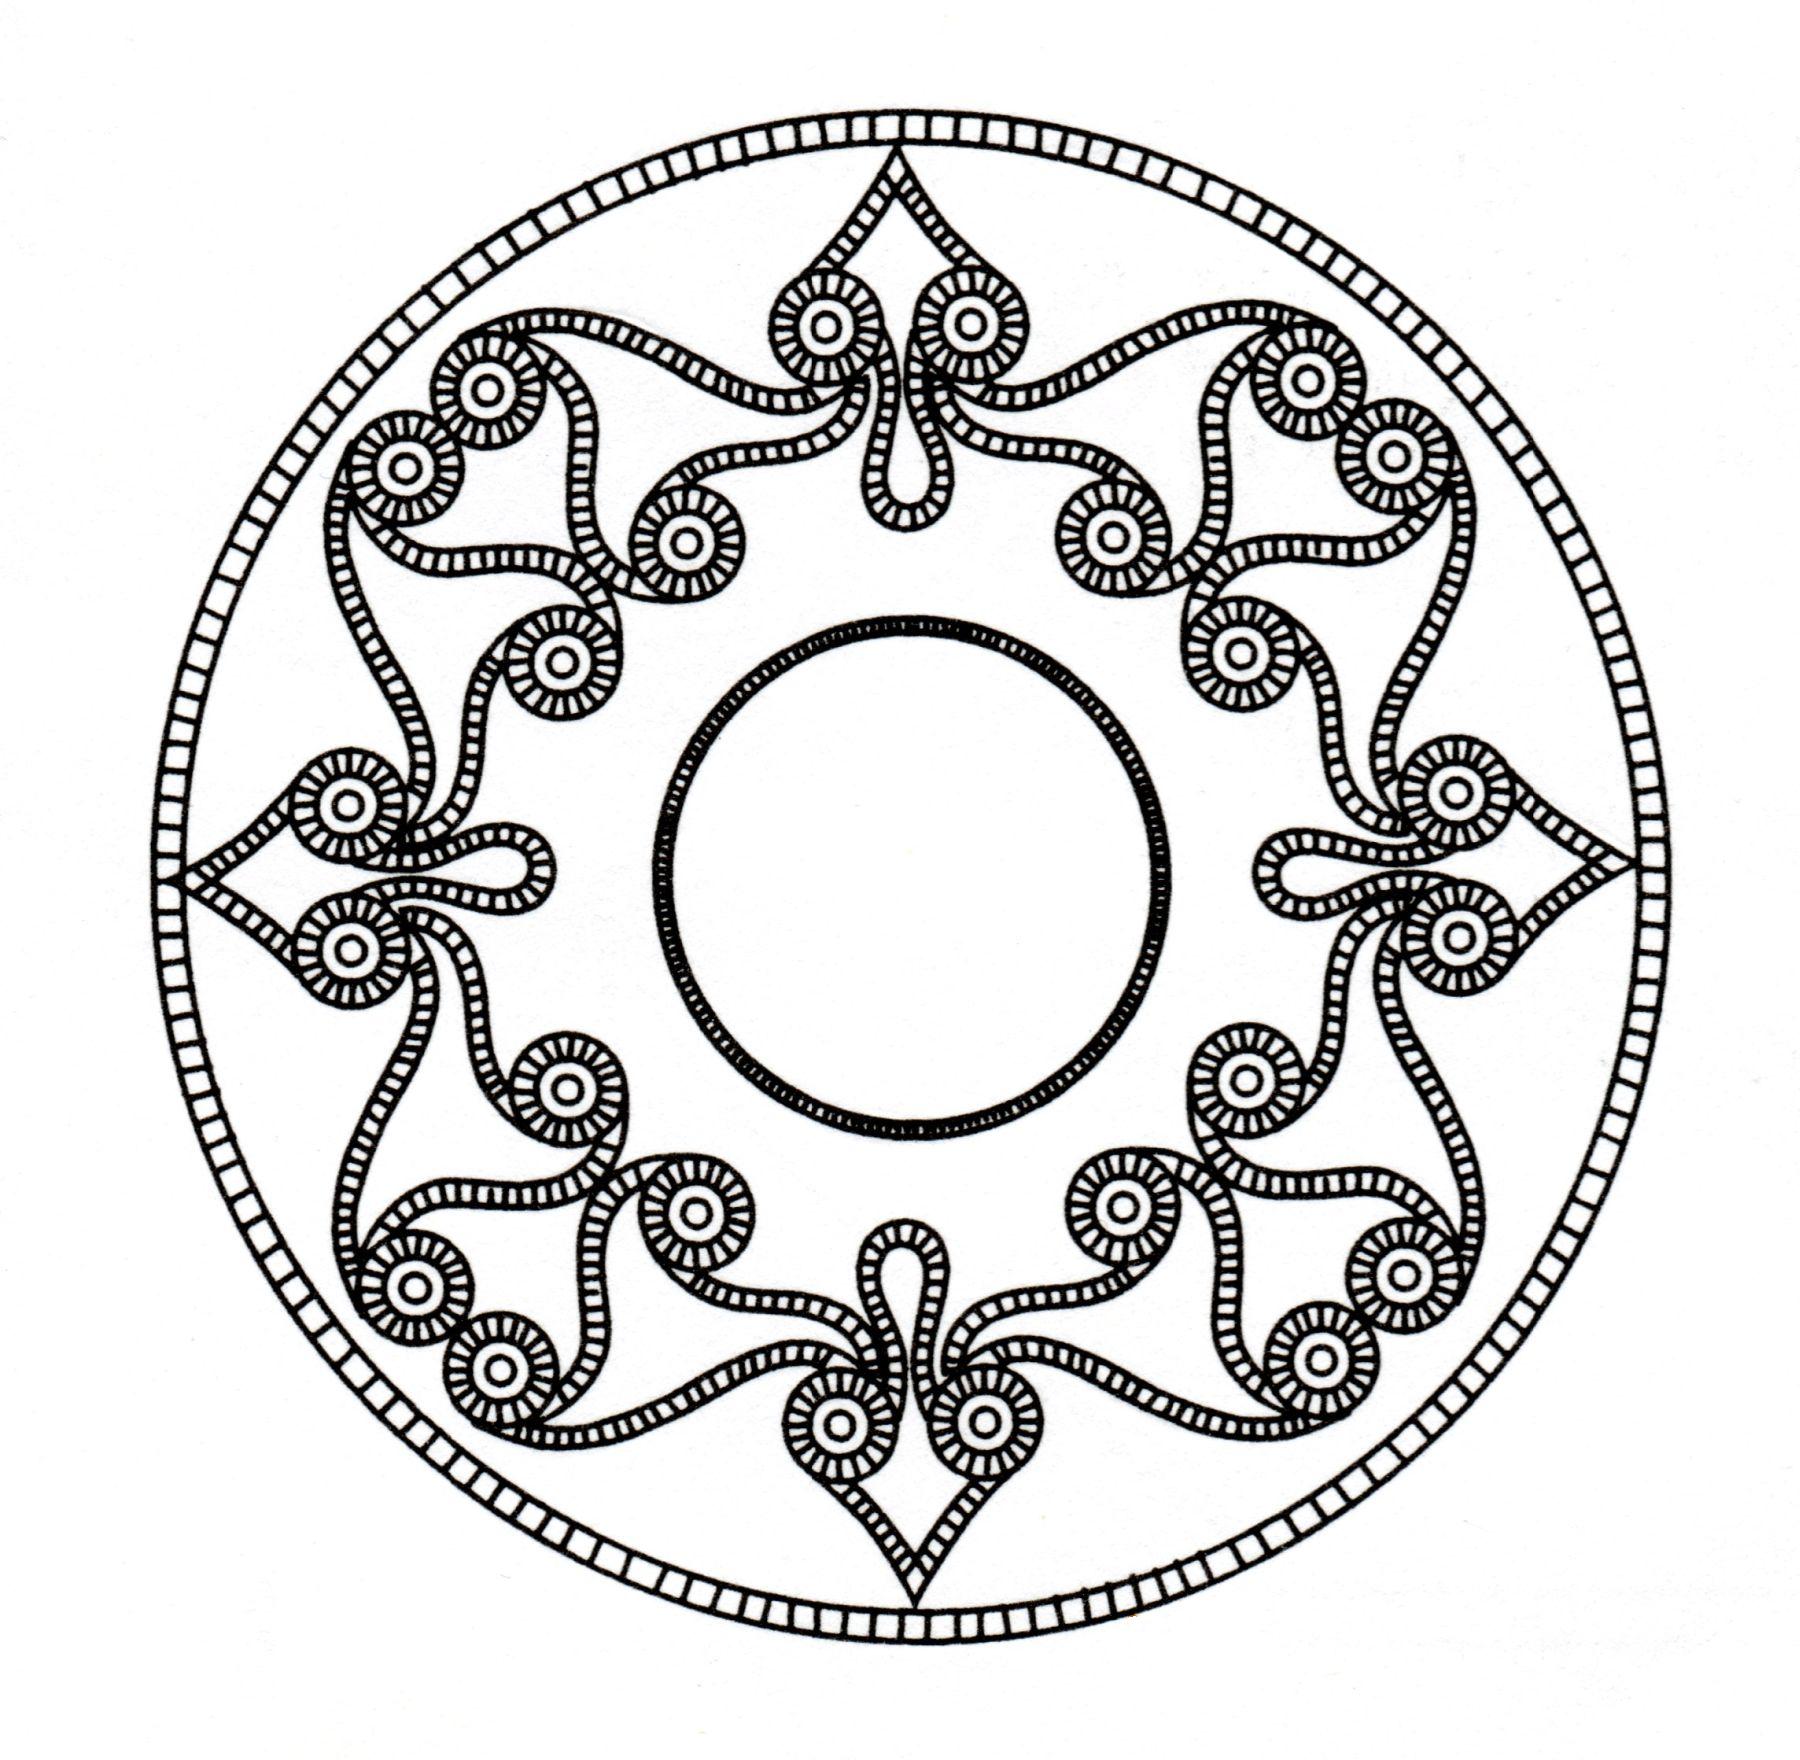 Un Mandala de difficulté 'normale', d'inspiration celtique, qui conviendra aux enfants et aux adultes qui souhaitent des coloriages ni trop simples ni trop difficiles.